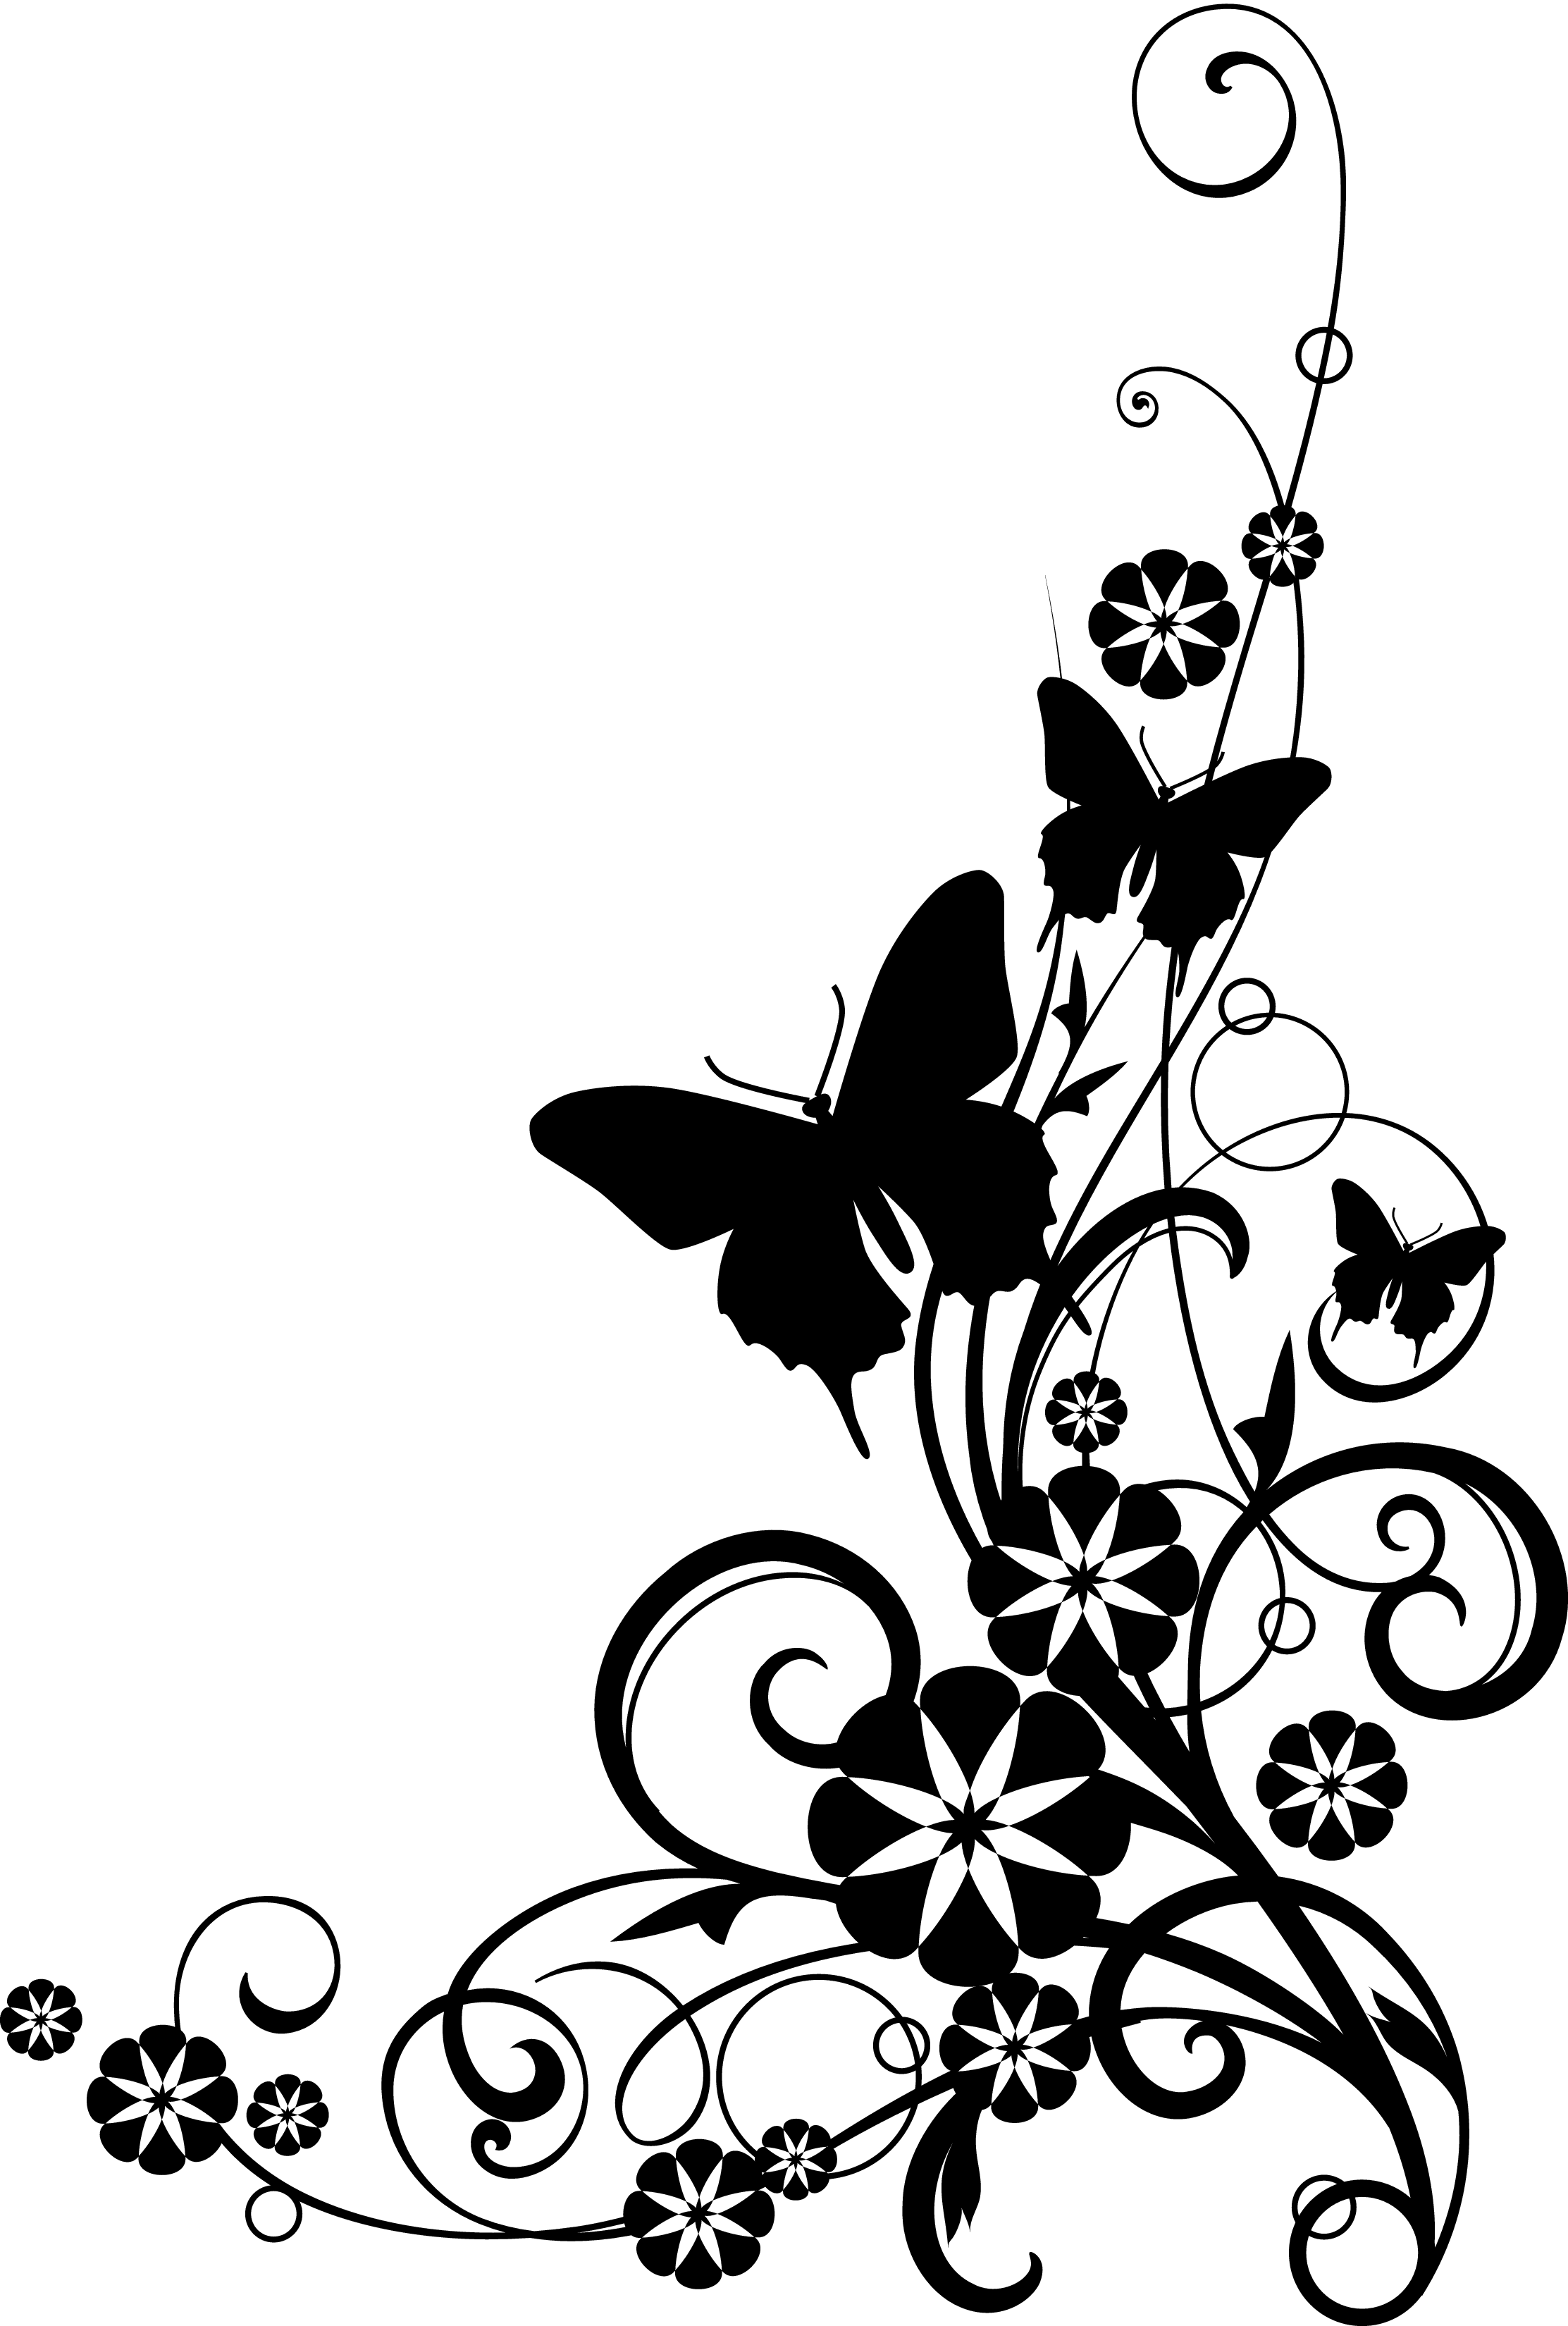 Butterfly drawings black.